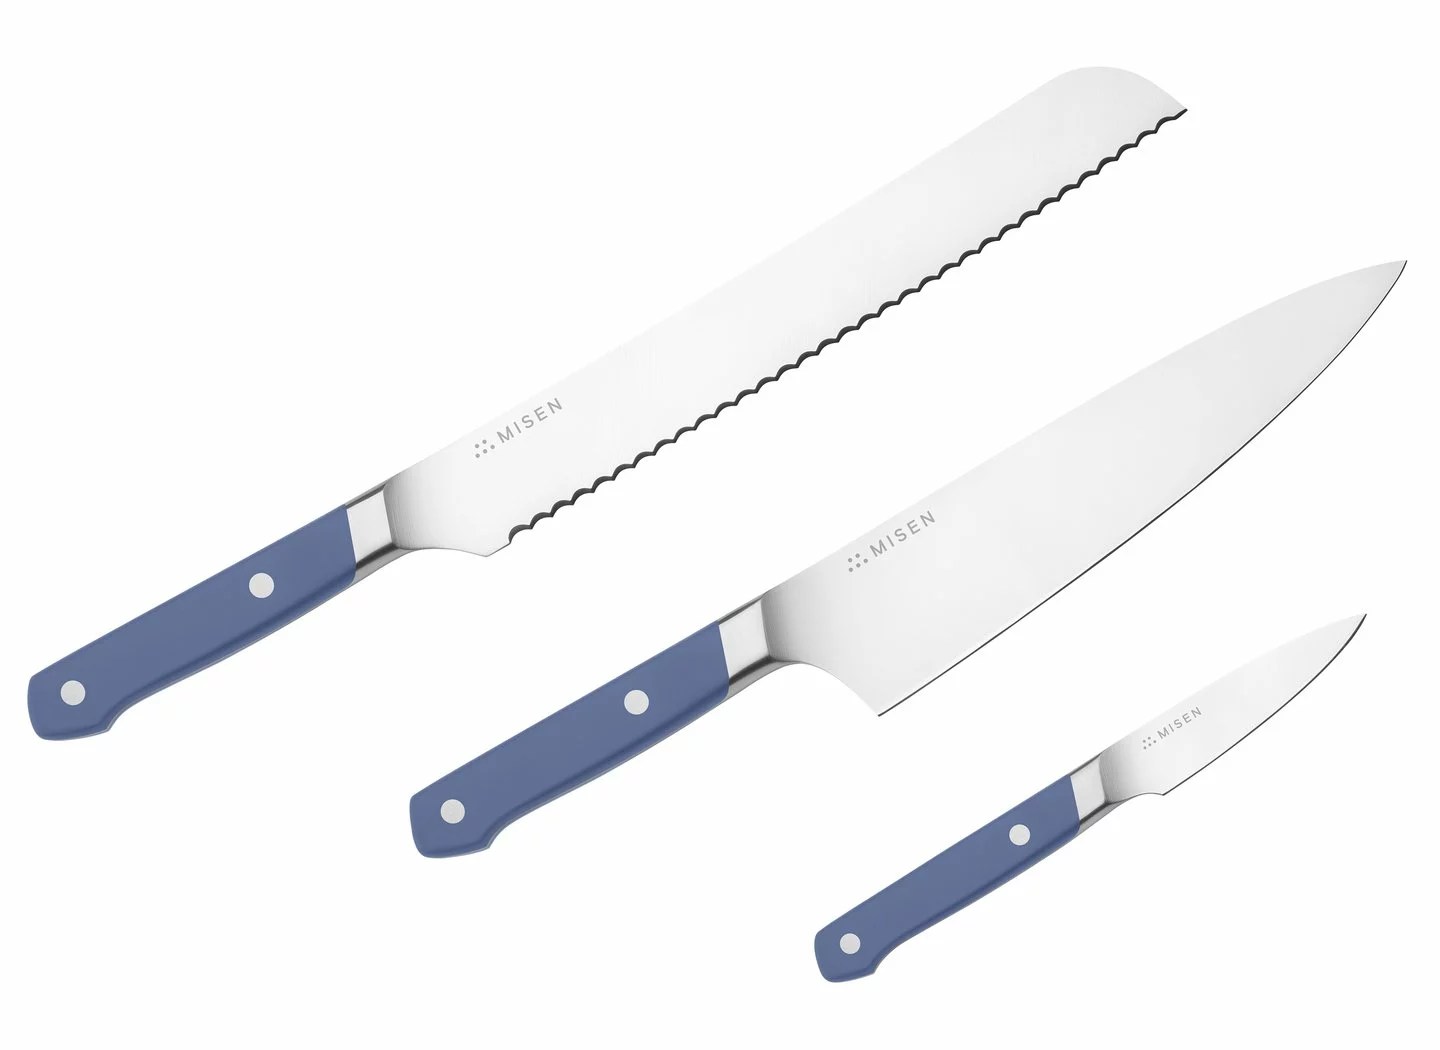 Misen essentials knife set